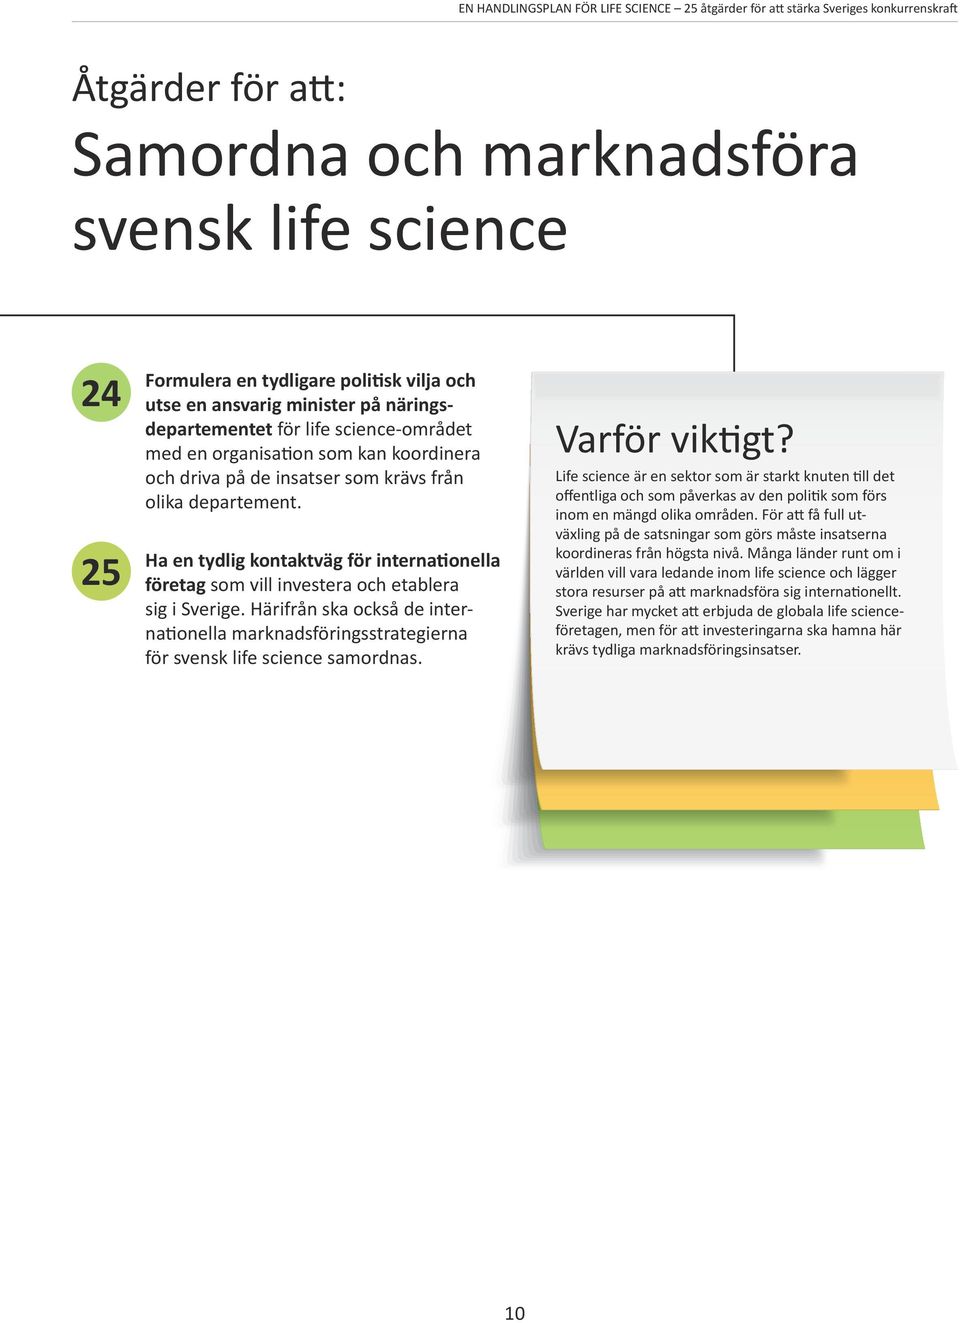 Härifrån ska också de internationella marknadsföringsstrategierna för svensk life science samordnas.